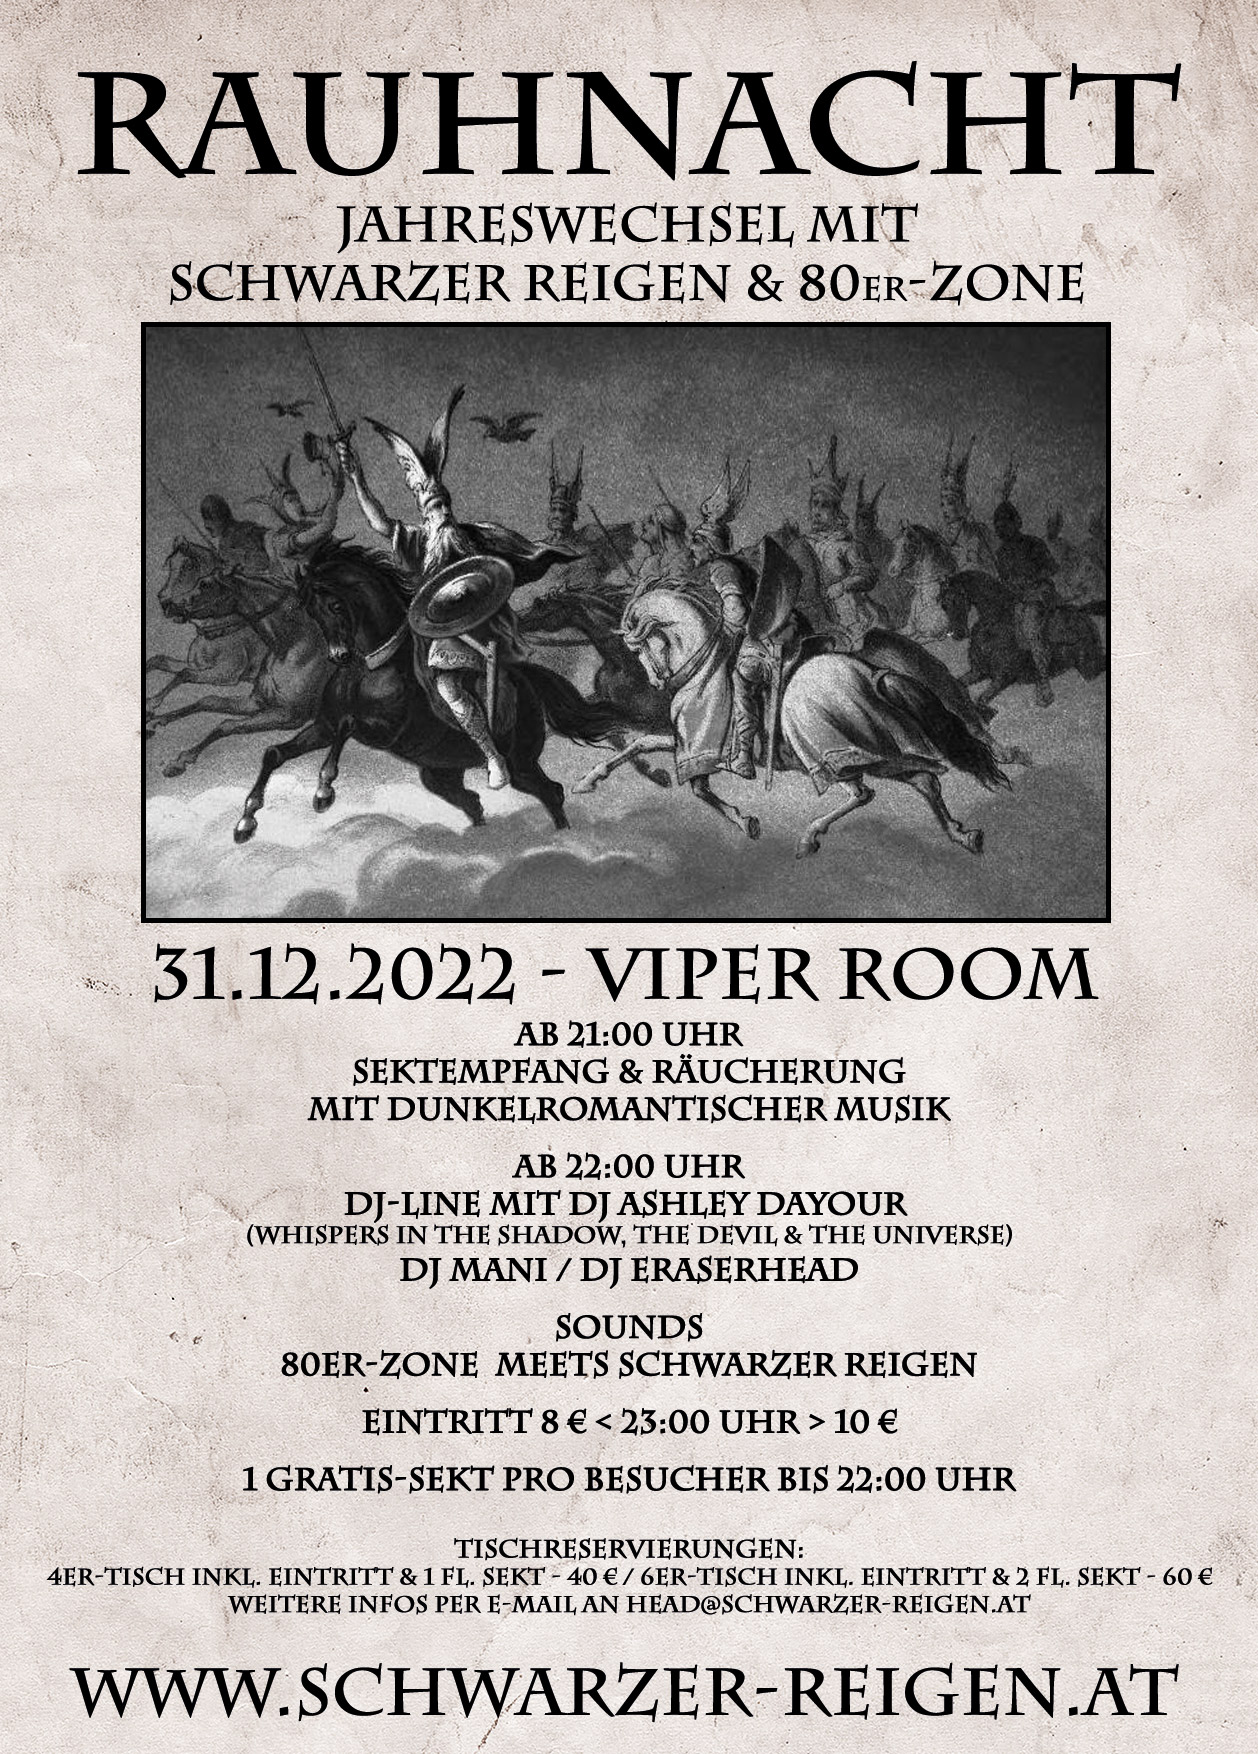 Rauhnacht - Jahreswechsel mit Schwarzer Reigen & 80er-Zone am 31. December 2022 @ Viper Room.